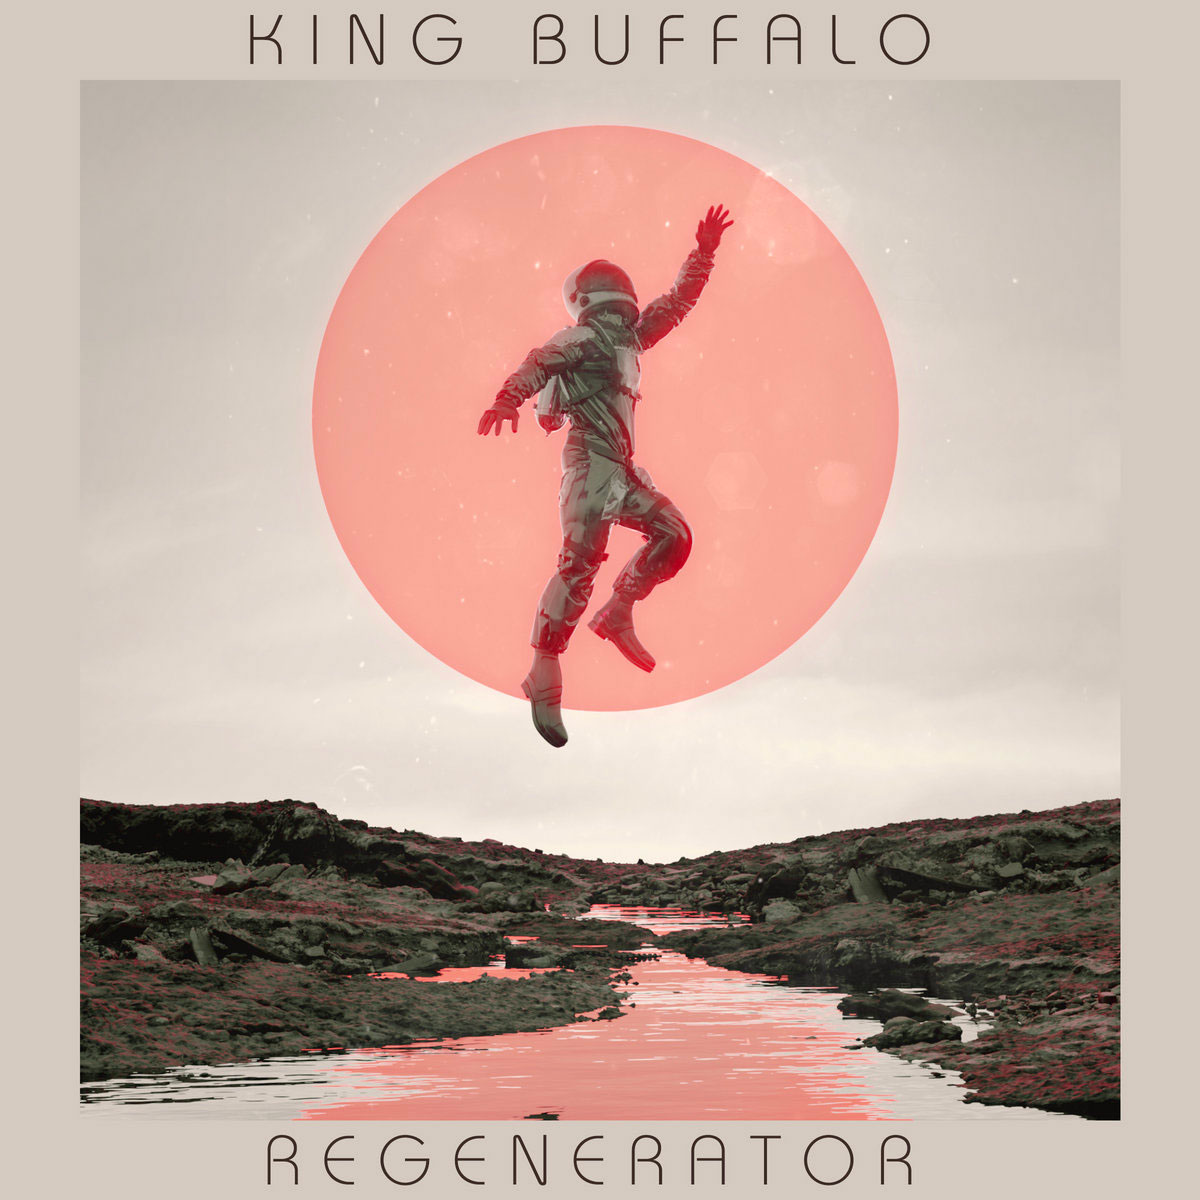 Regenerator by King Buffalo